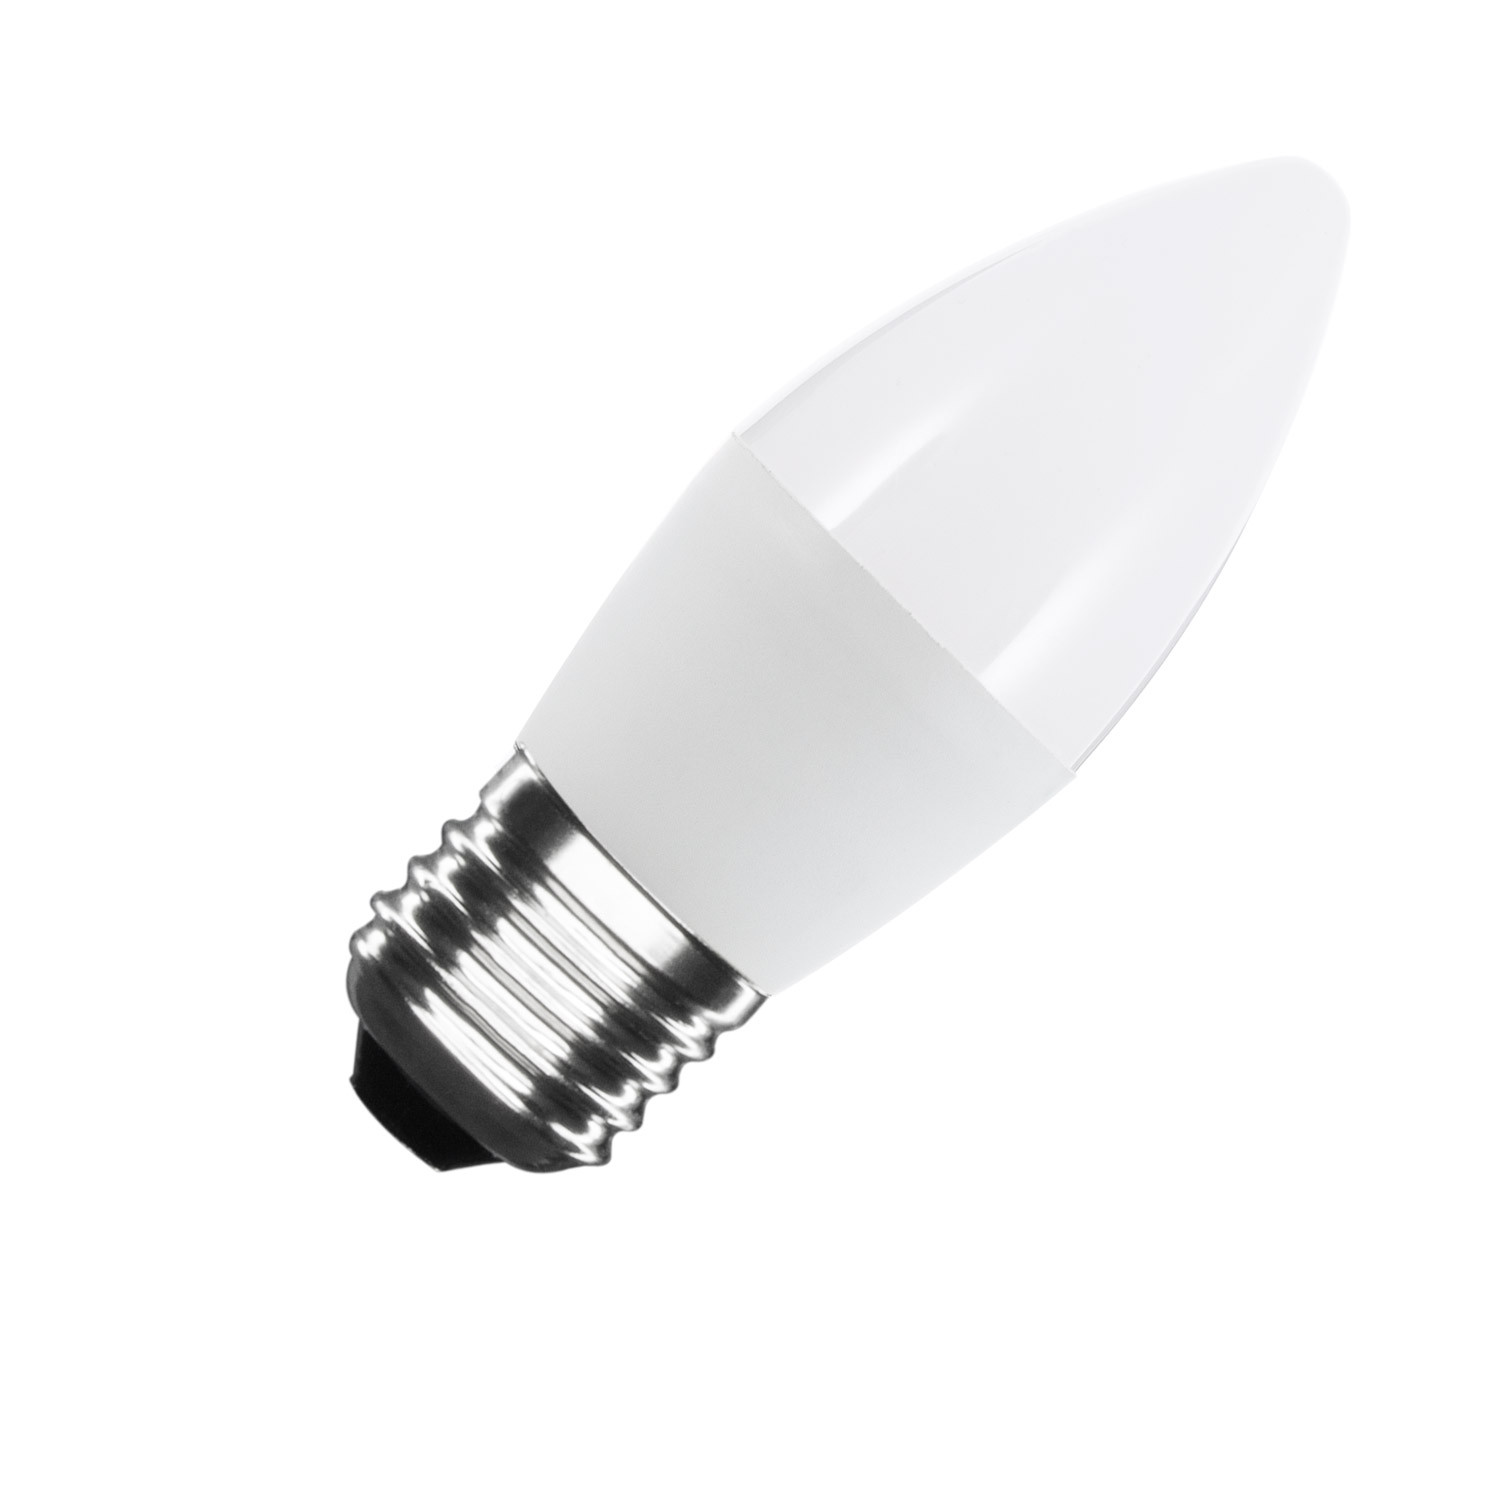 LED lamp 5W 400 lm C37 - Ledkia